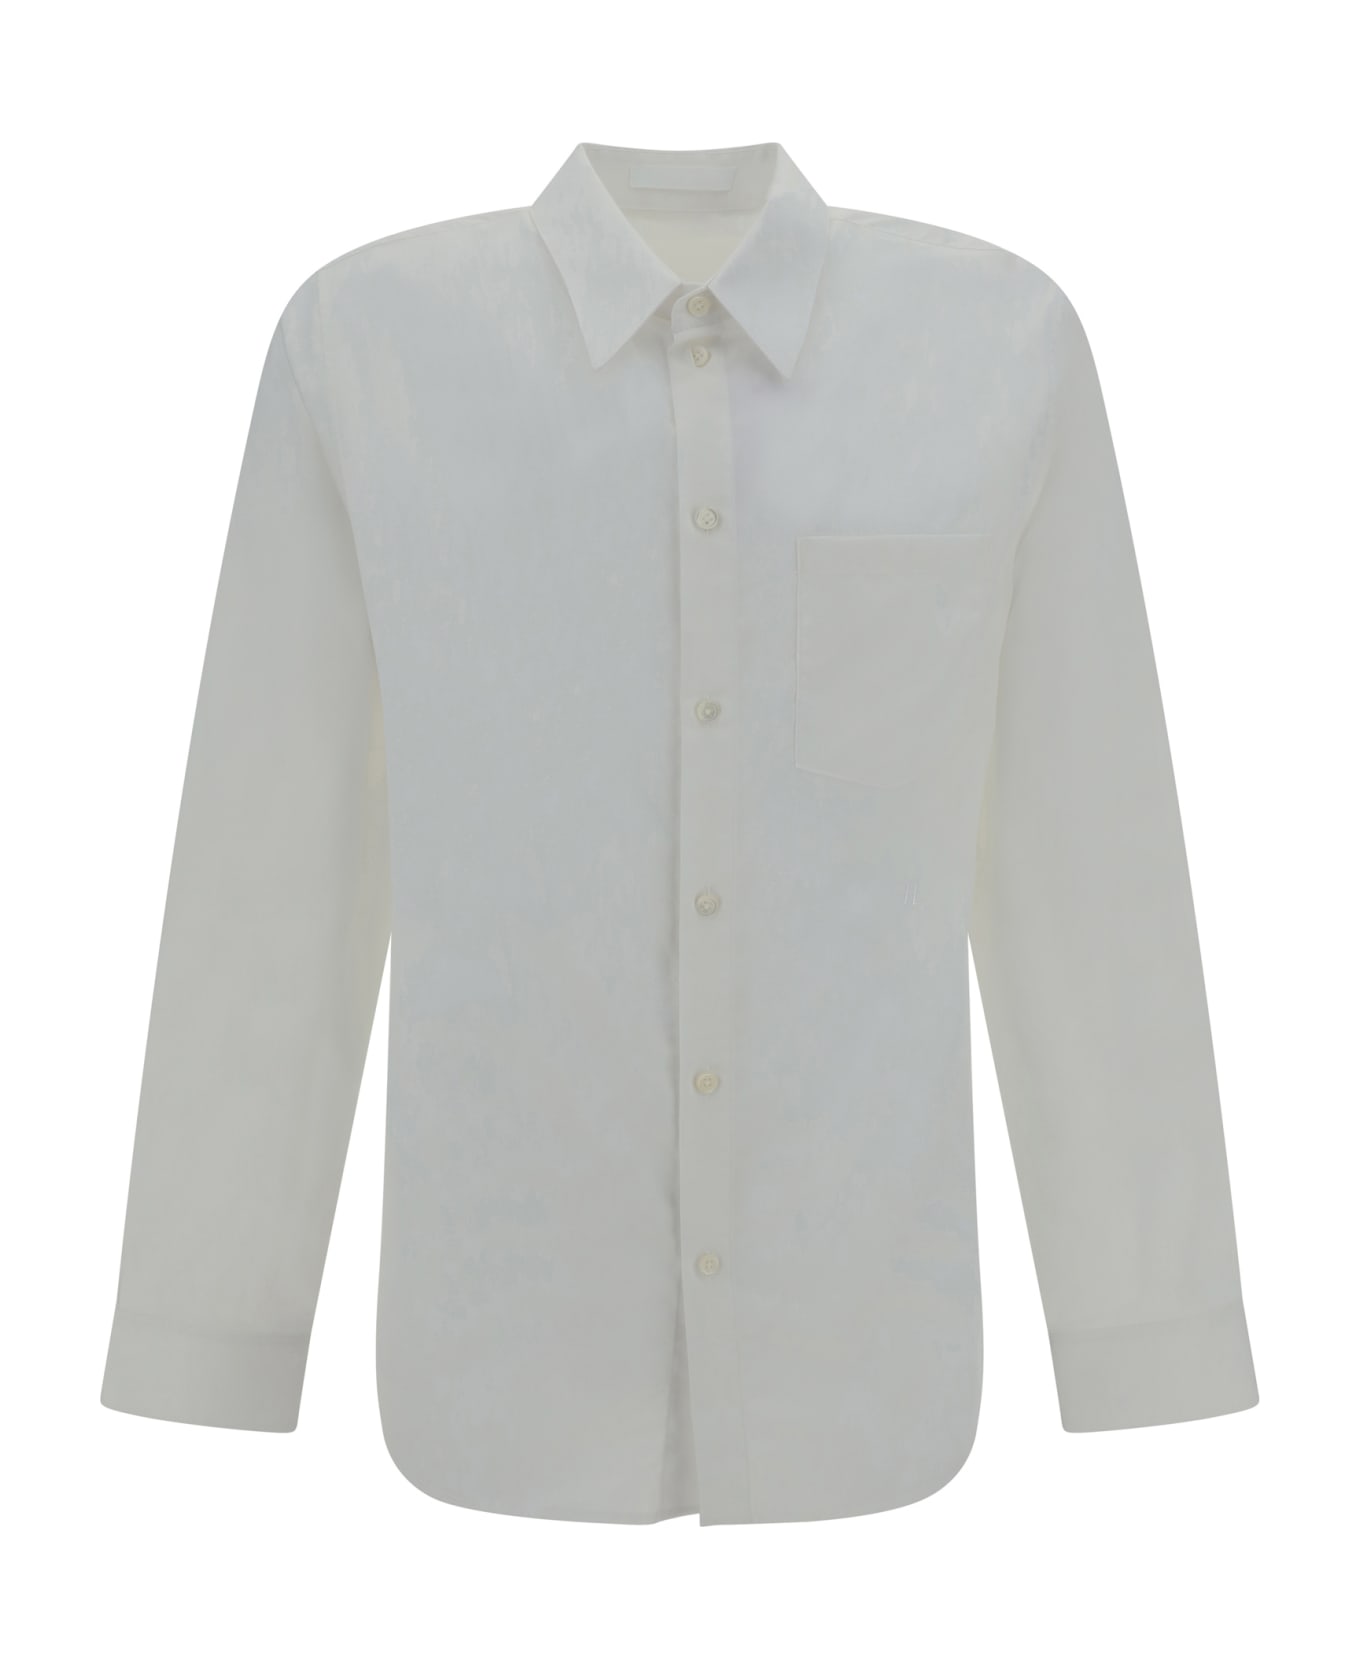 Helmut Lang Shirt - White シャツ